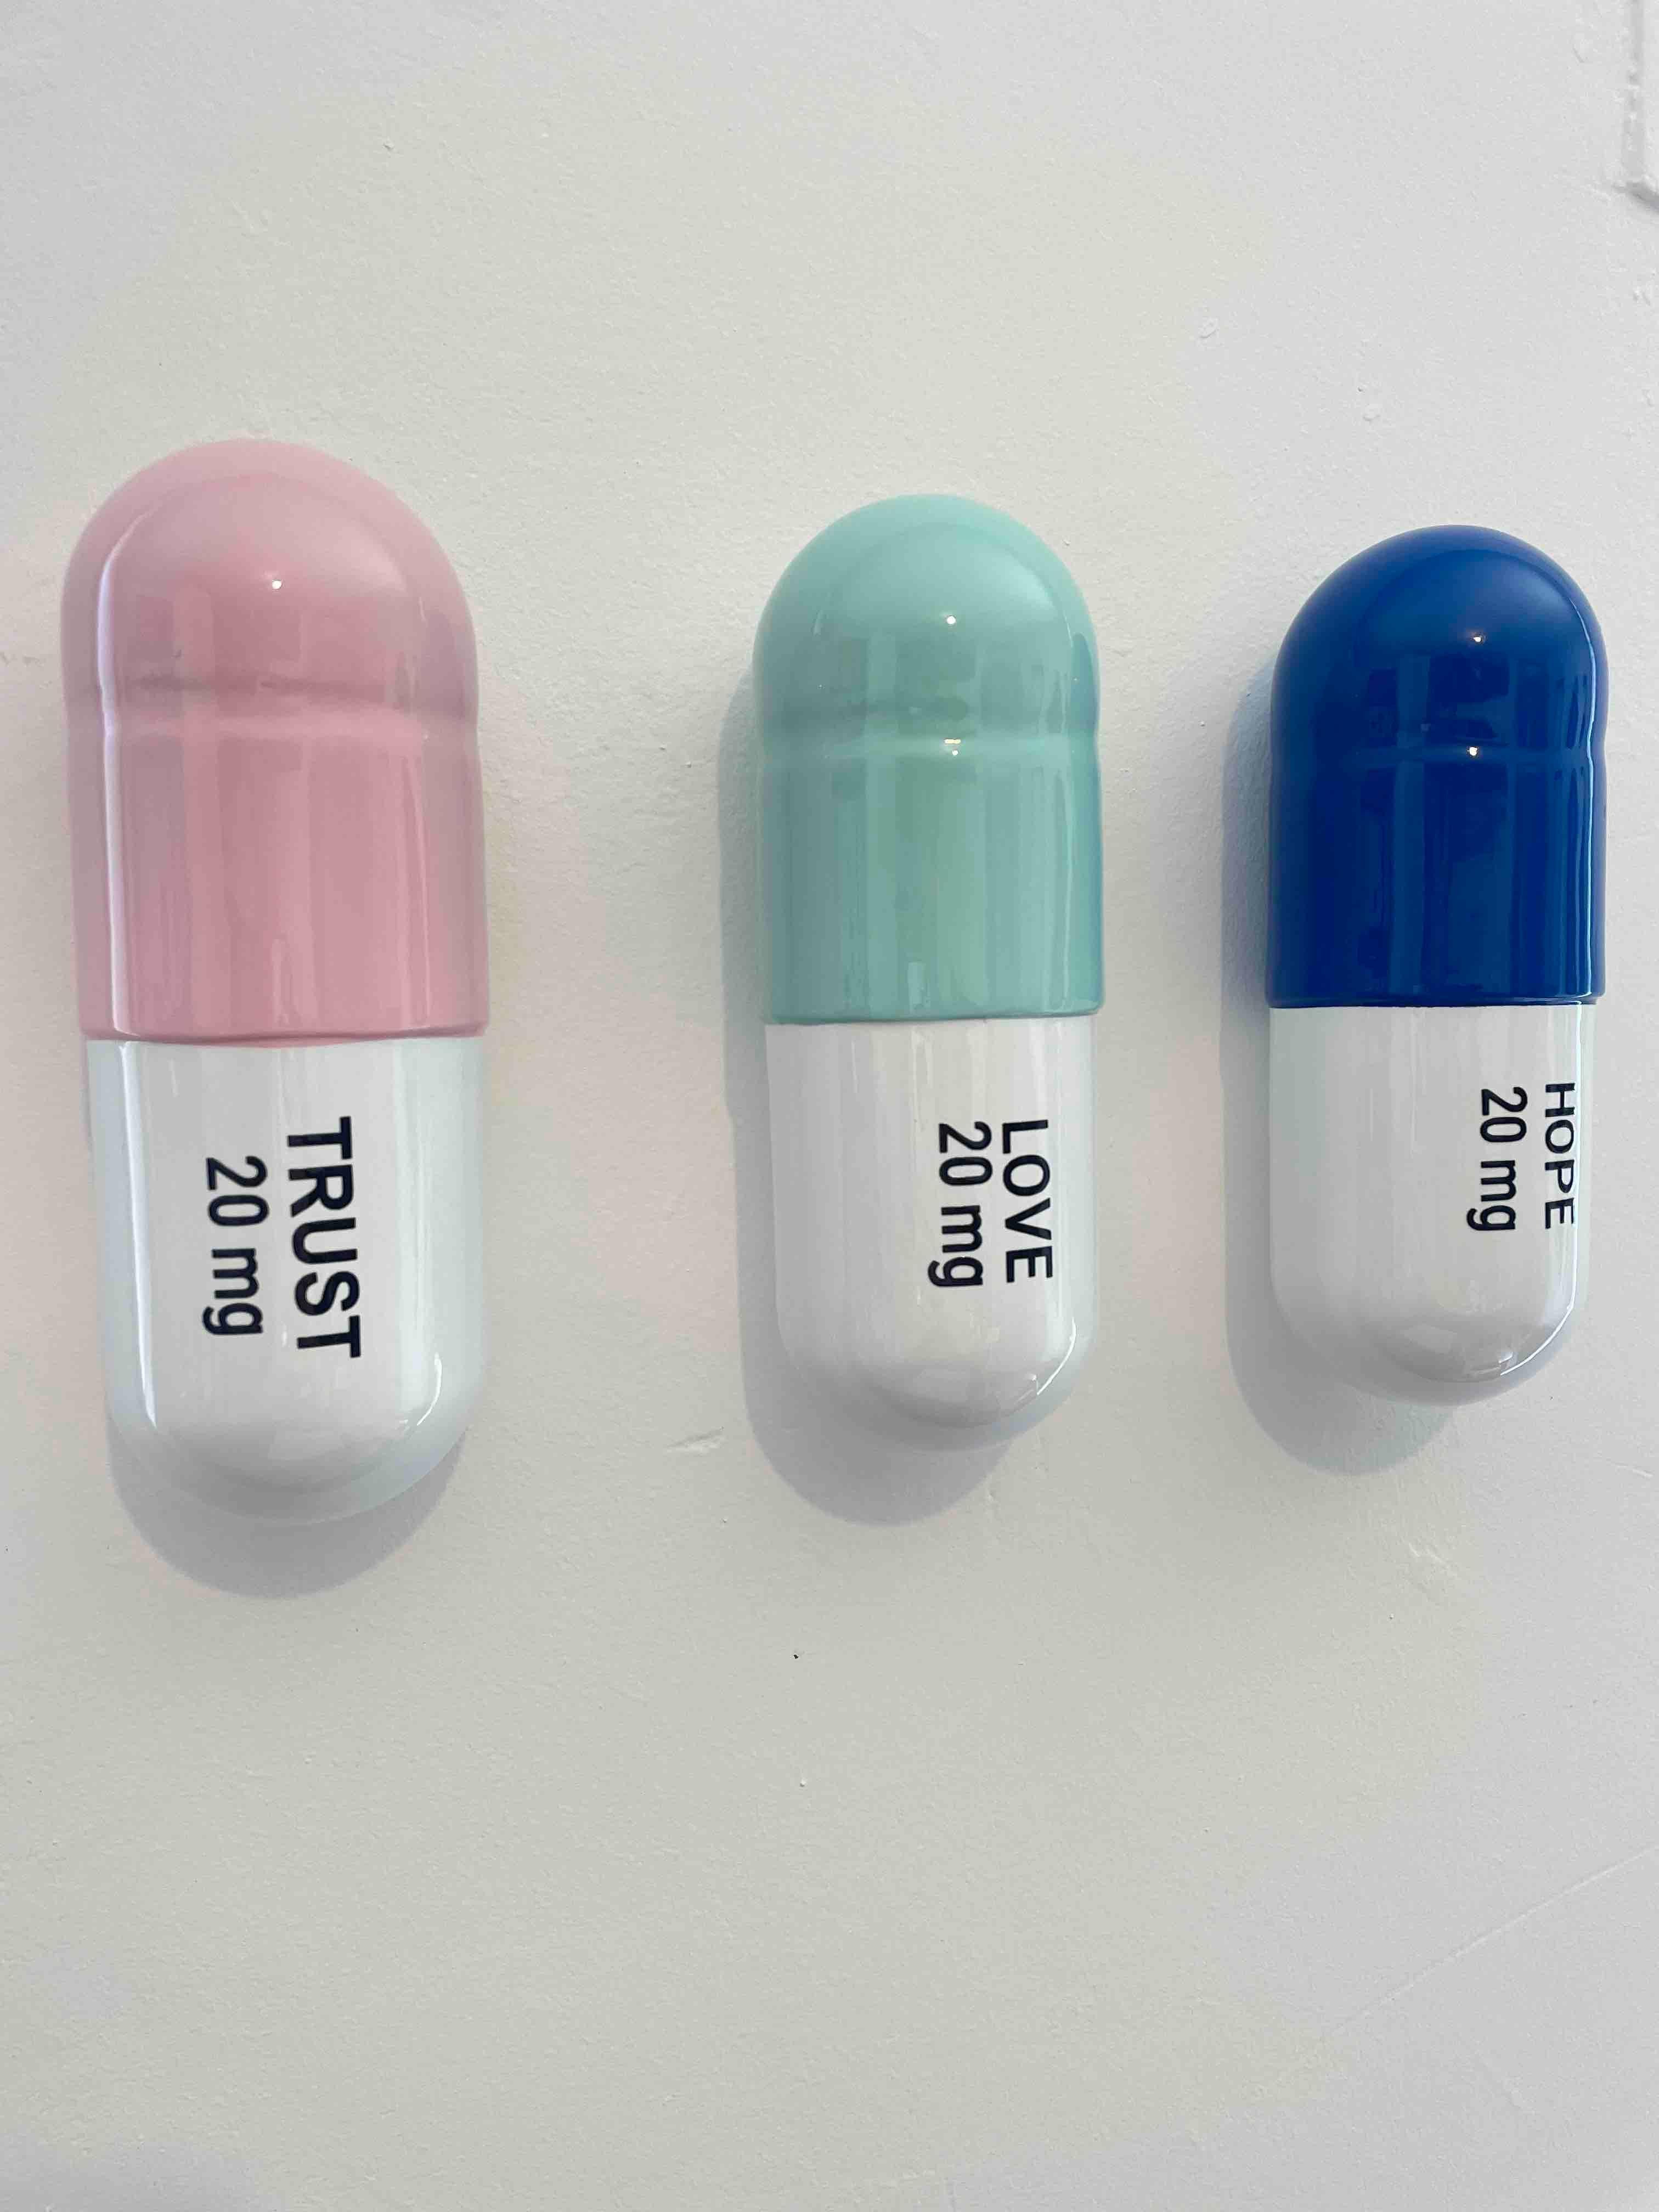 20 MG Trust, Love, Hope pill Combo (blue, mint green, light pink)  pop sculpture - Pop Art Sculpture by Tal Nehoray